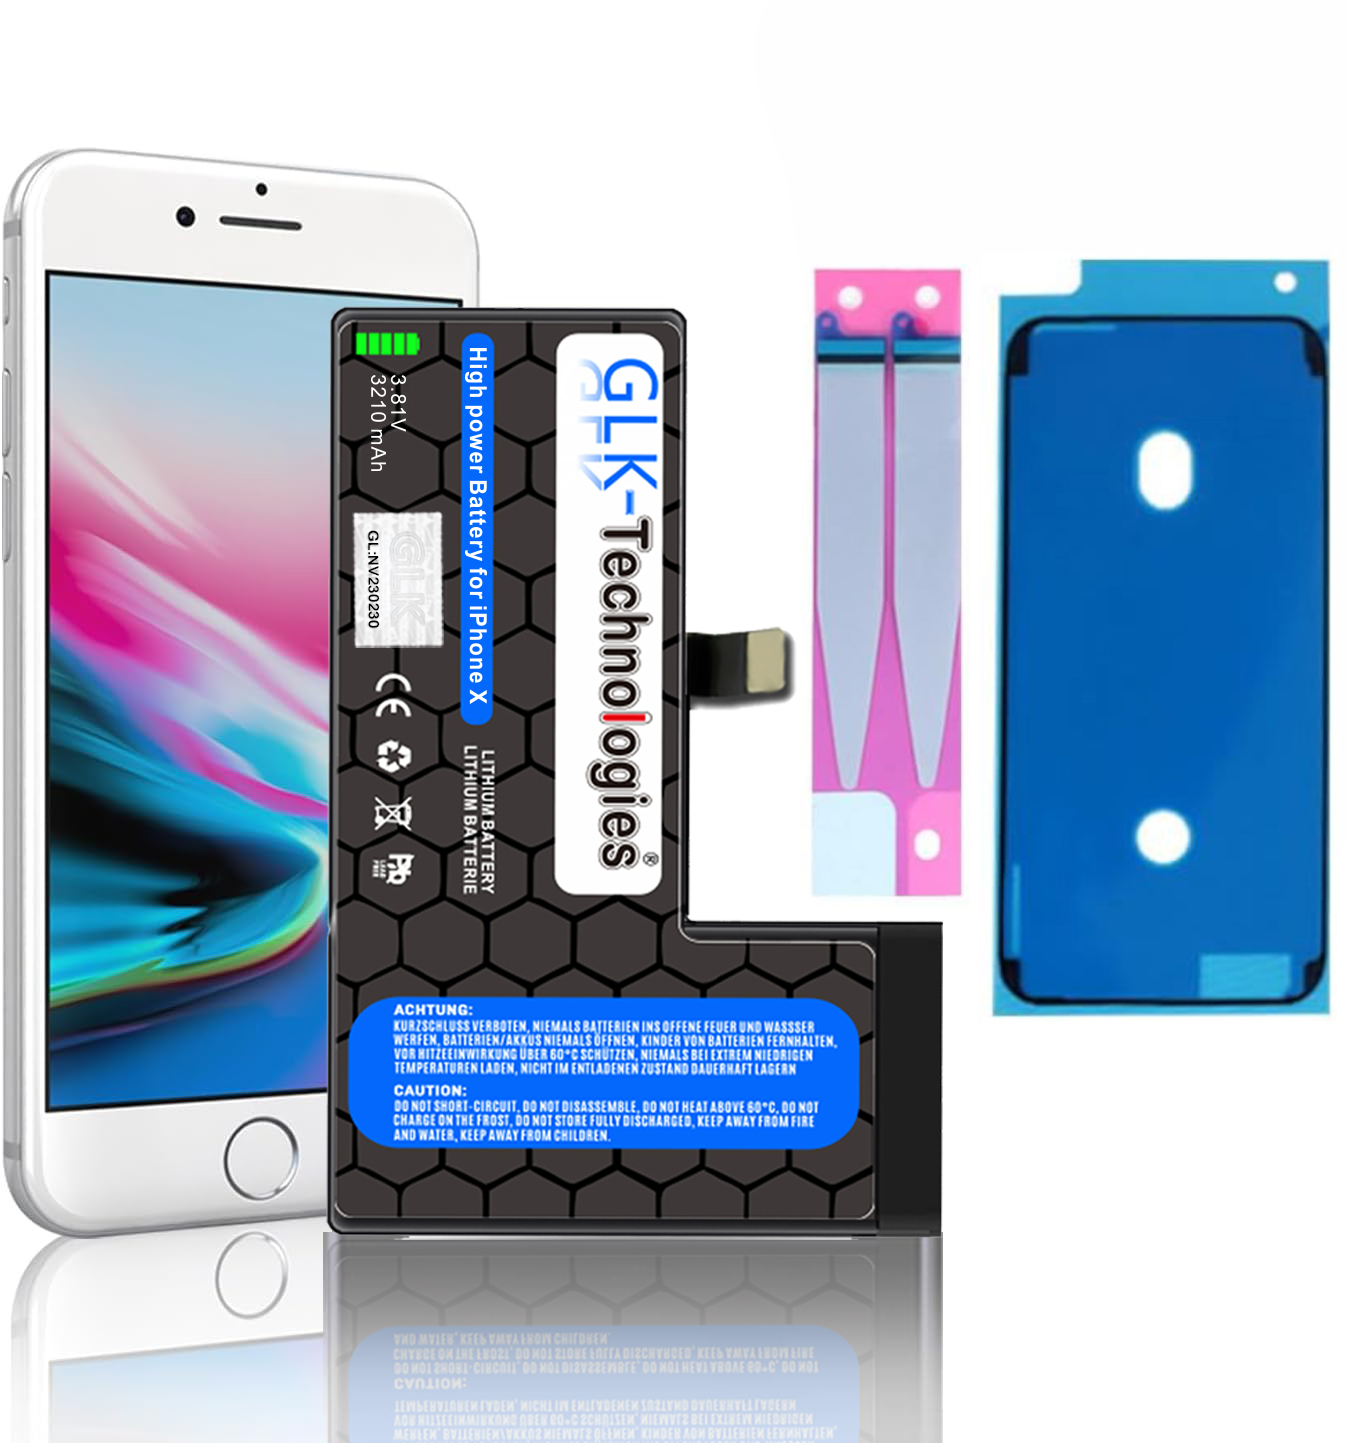 inkl. Li-Ion Smartphone Apple 3.8 2930mAh iPhone X 2X Akku, Ersatz GLK-TECHNOLOGIES Lithium-Ionen, Klebebandsätze Volt,